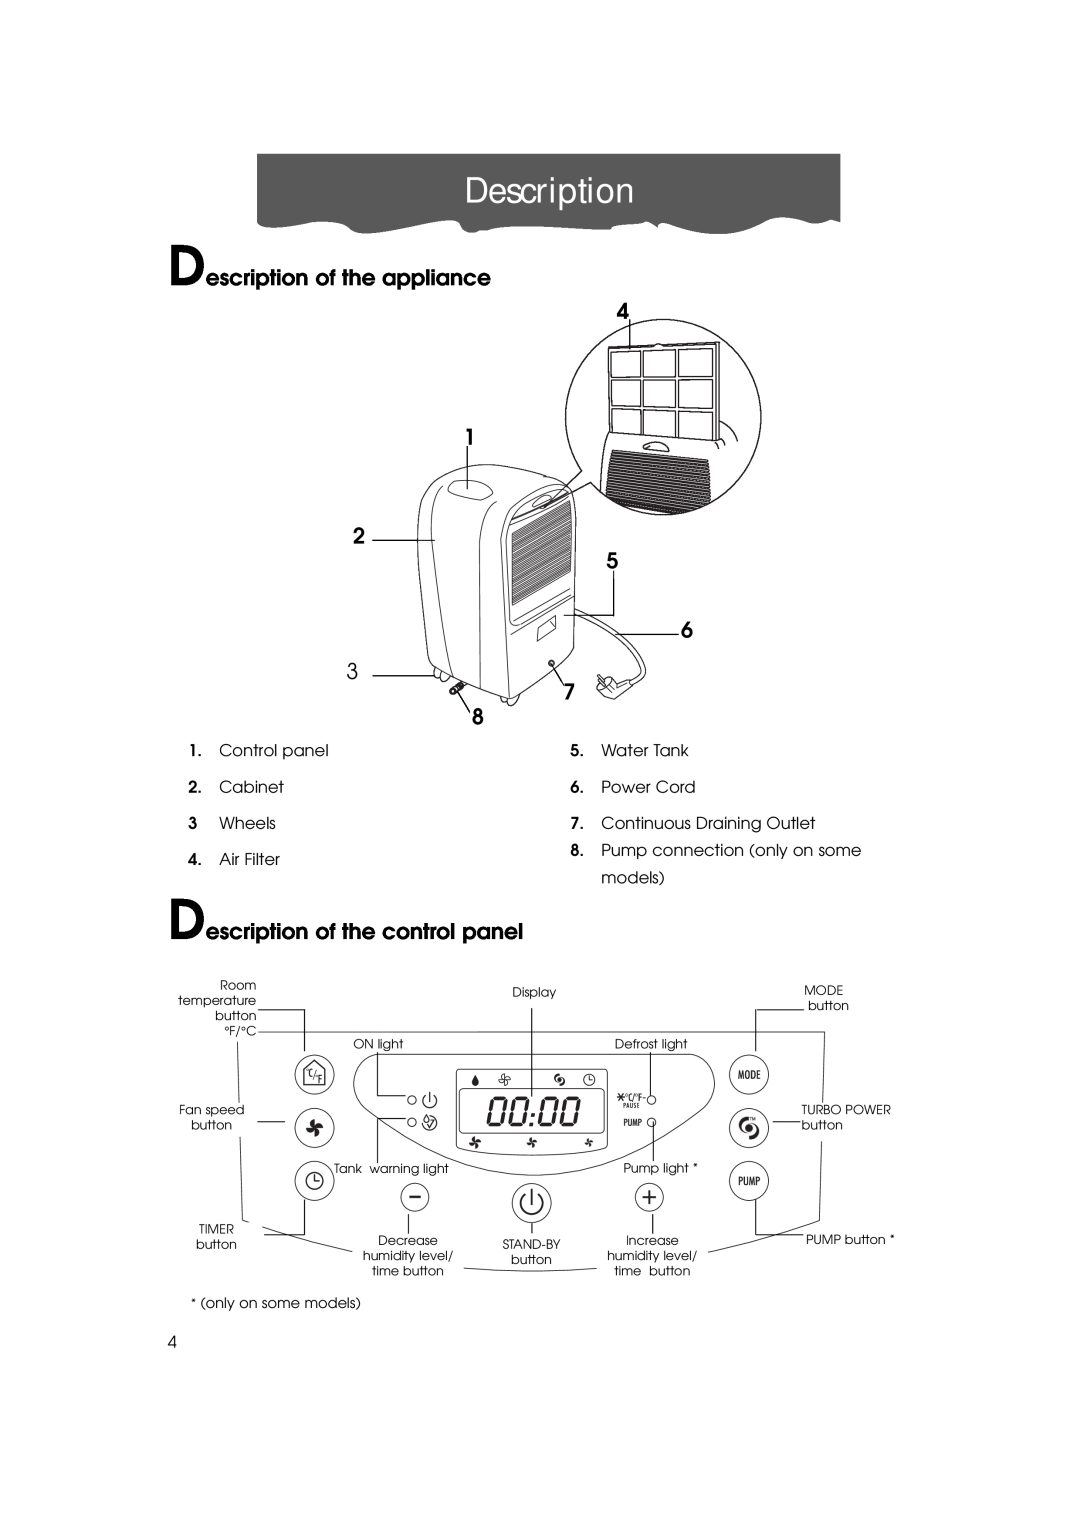 DeLonghi DE 500P, DH400P, DE 400P, DE500, de 400 Description of the appliance, Description of the control panel 